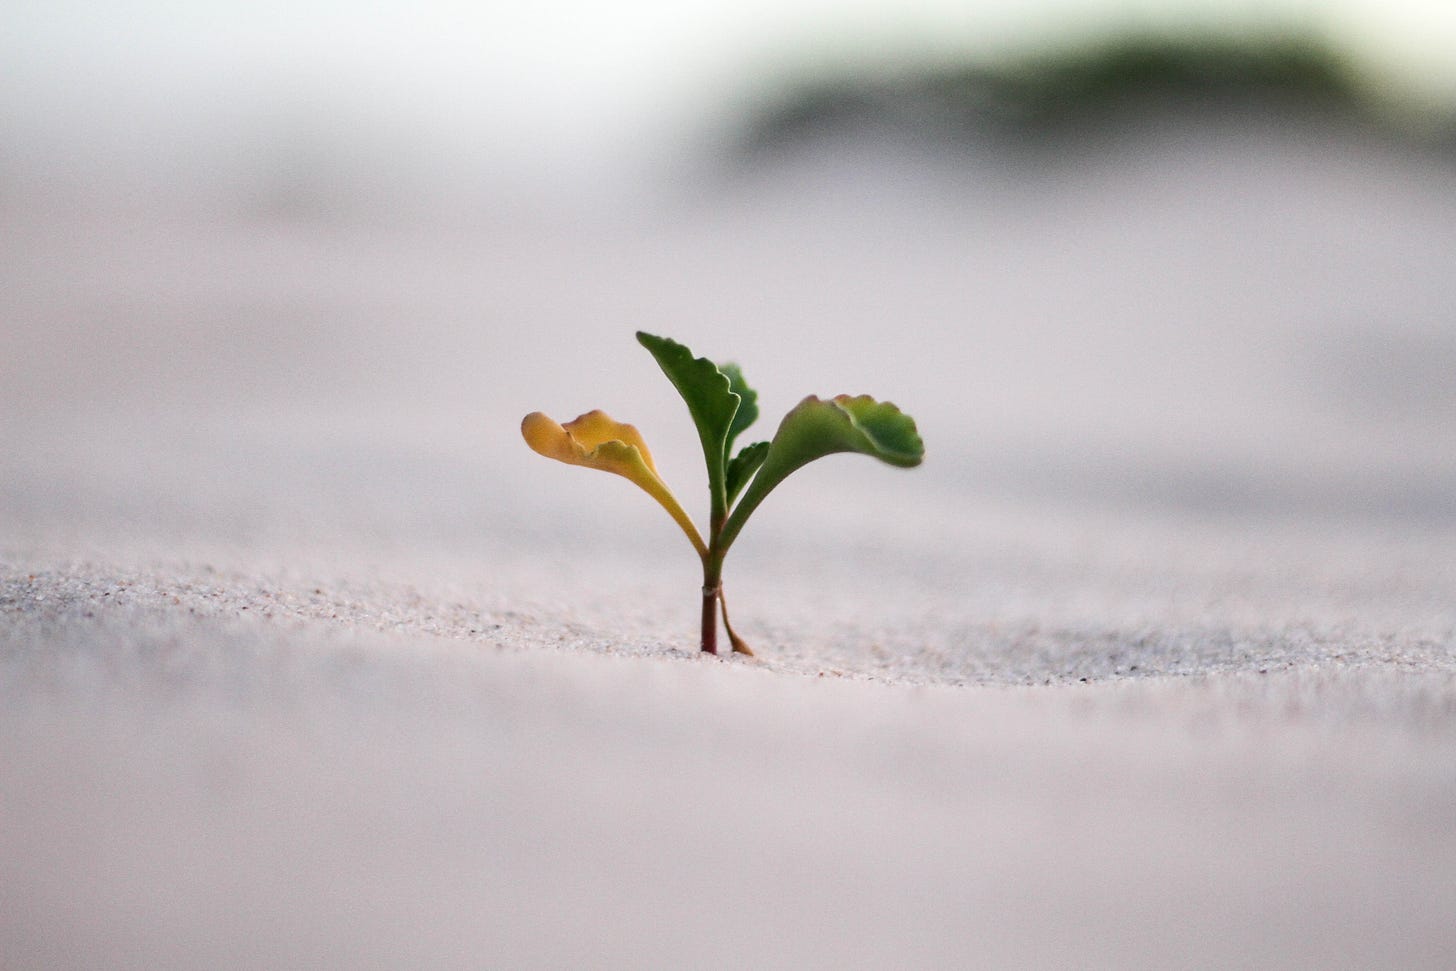 A photo of a tiny sapling.